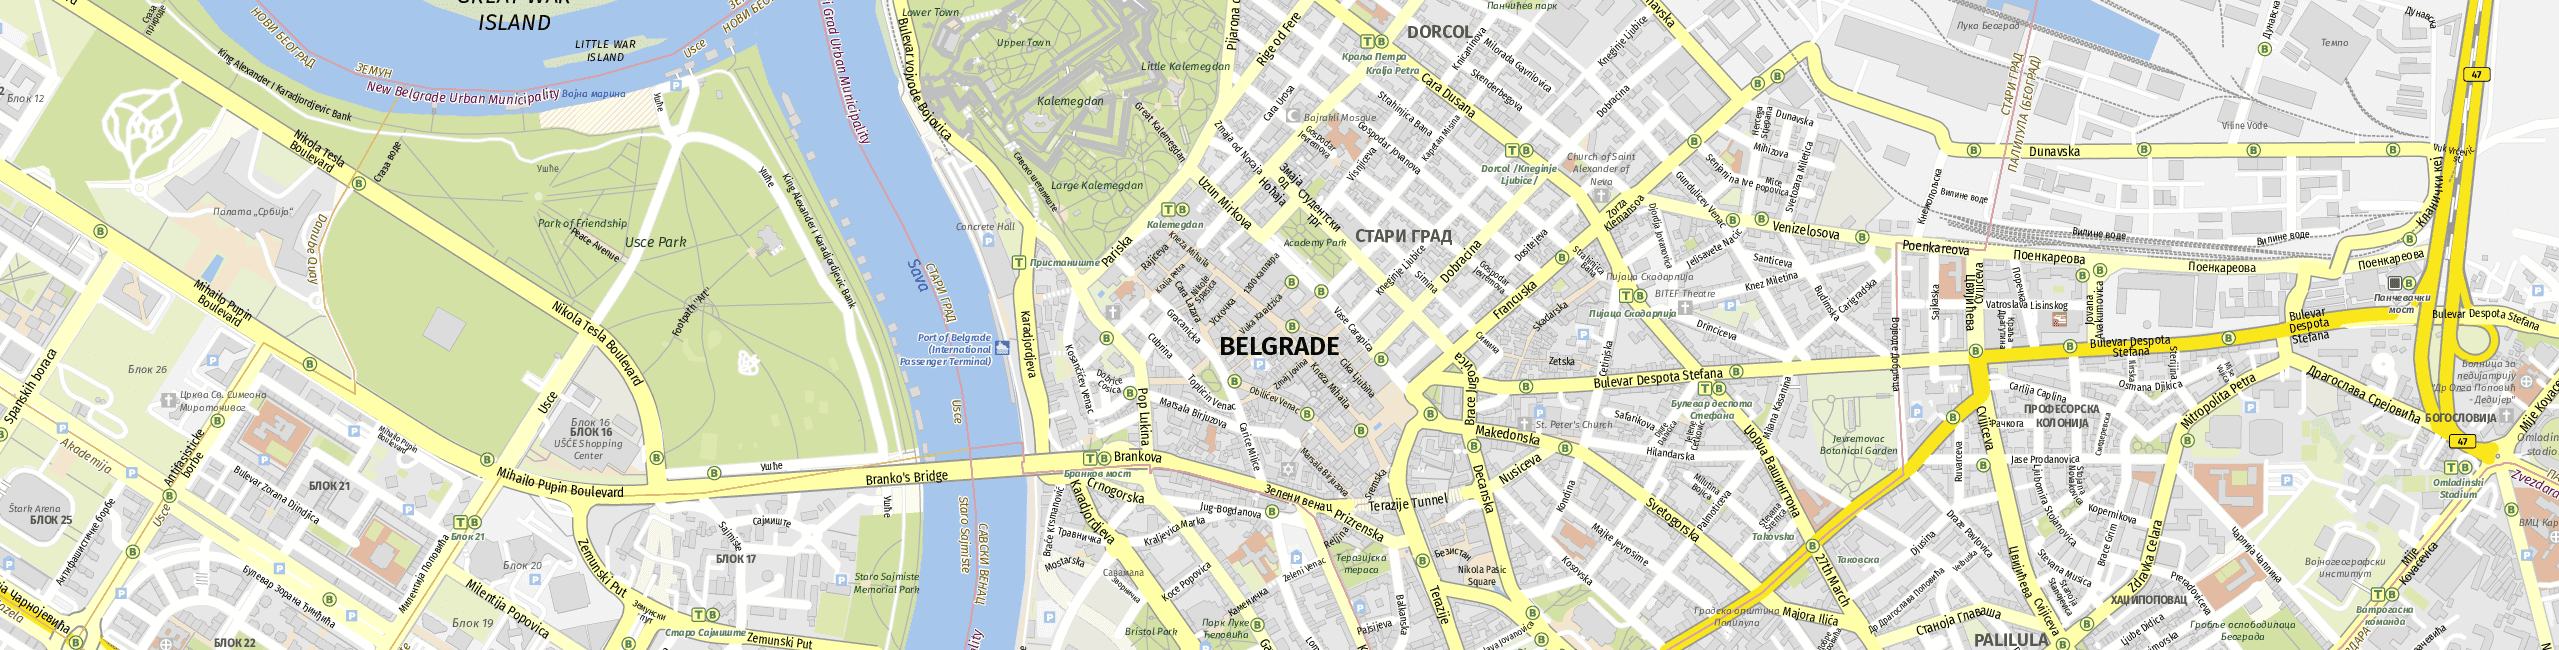 Stadtplan Belgrad zum Downloaden.